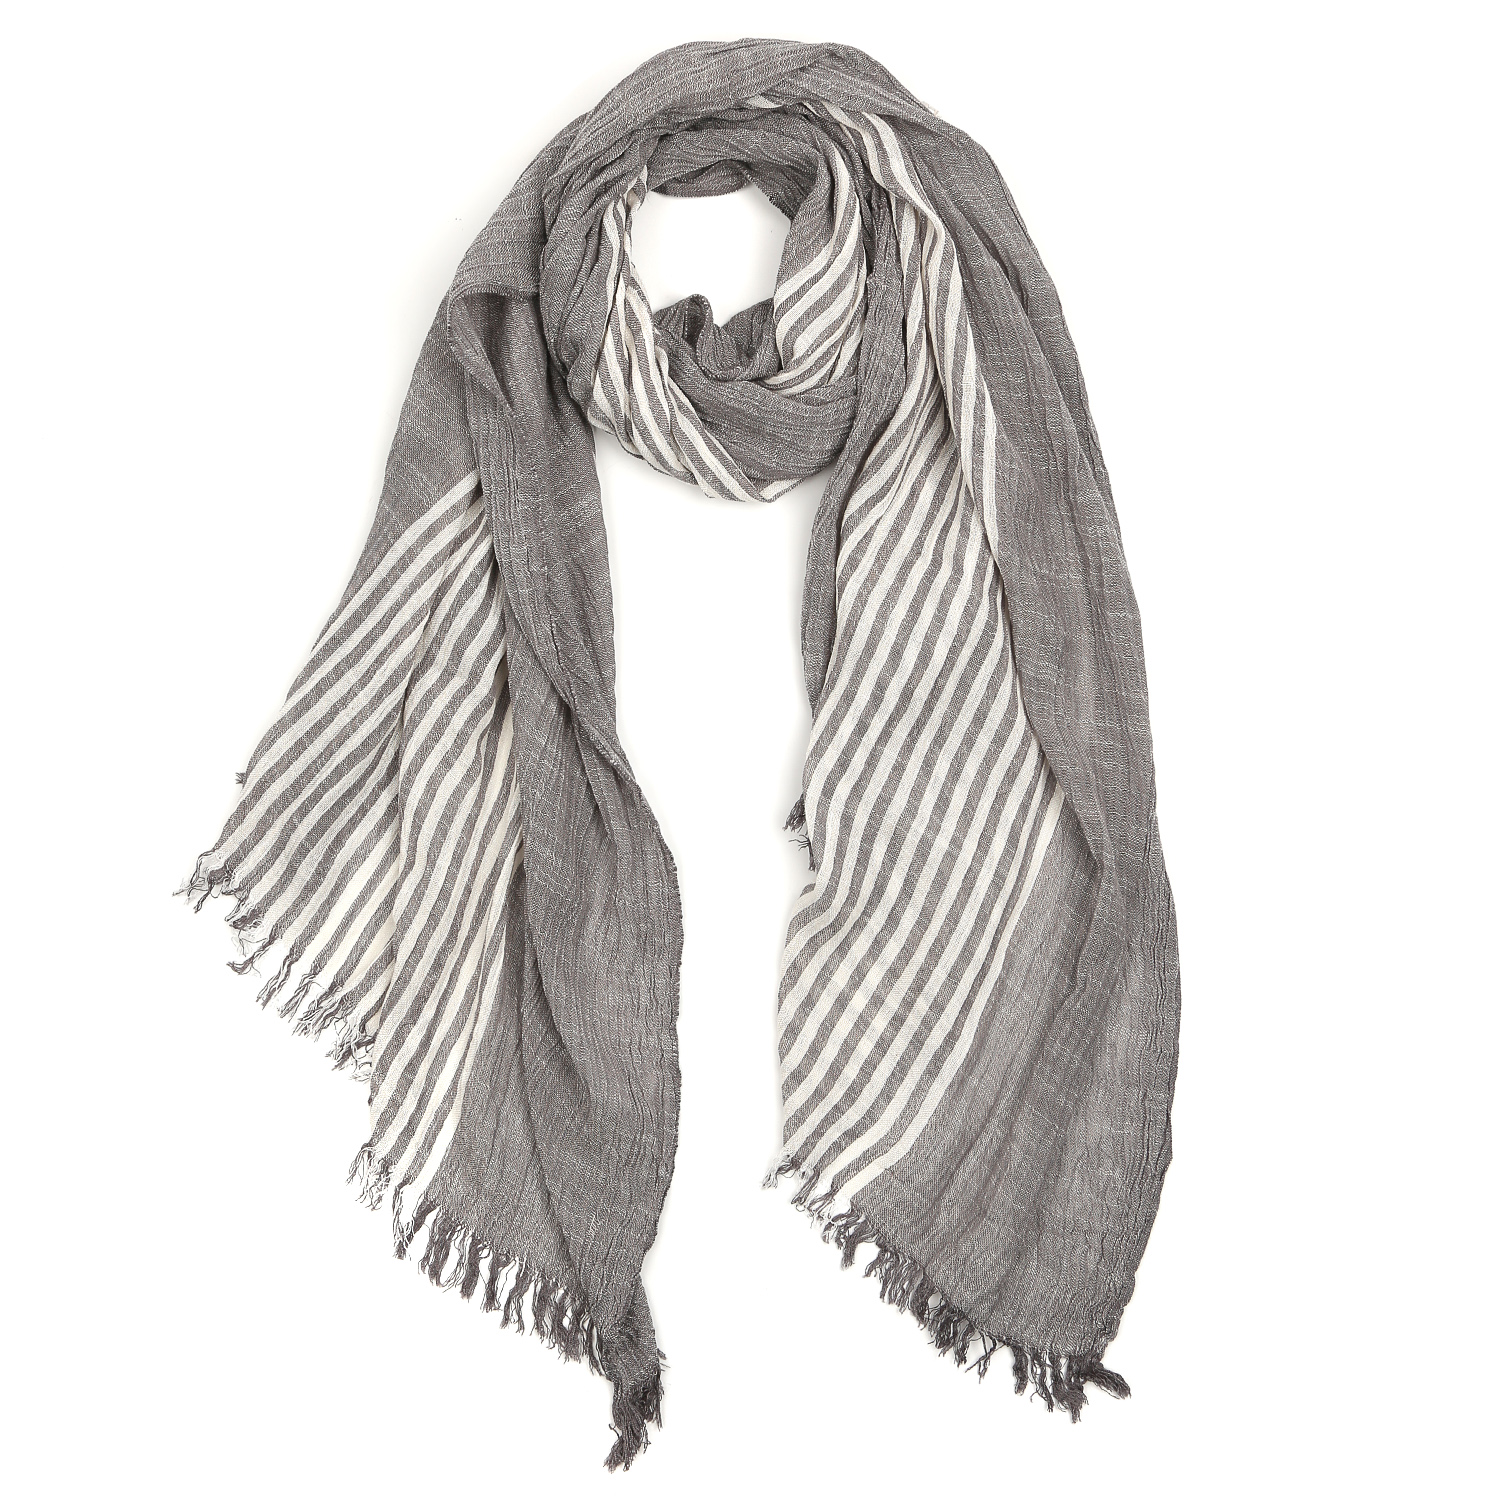 Купить мужские шарфы в интернет-магазине thebestterrier.ru, цены и фото